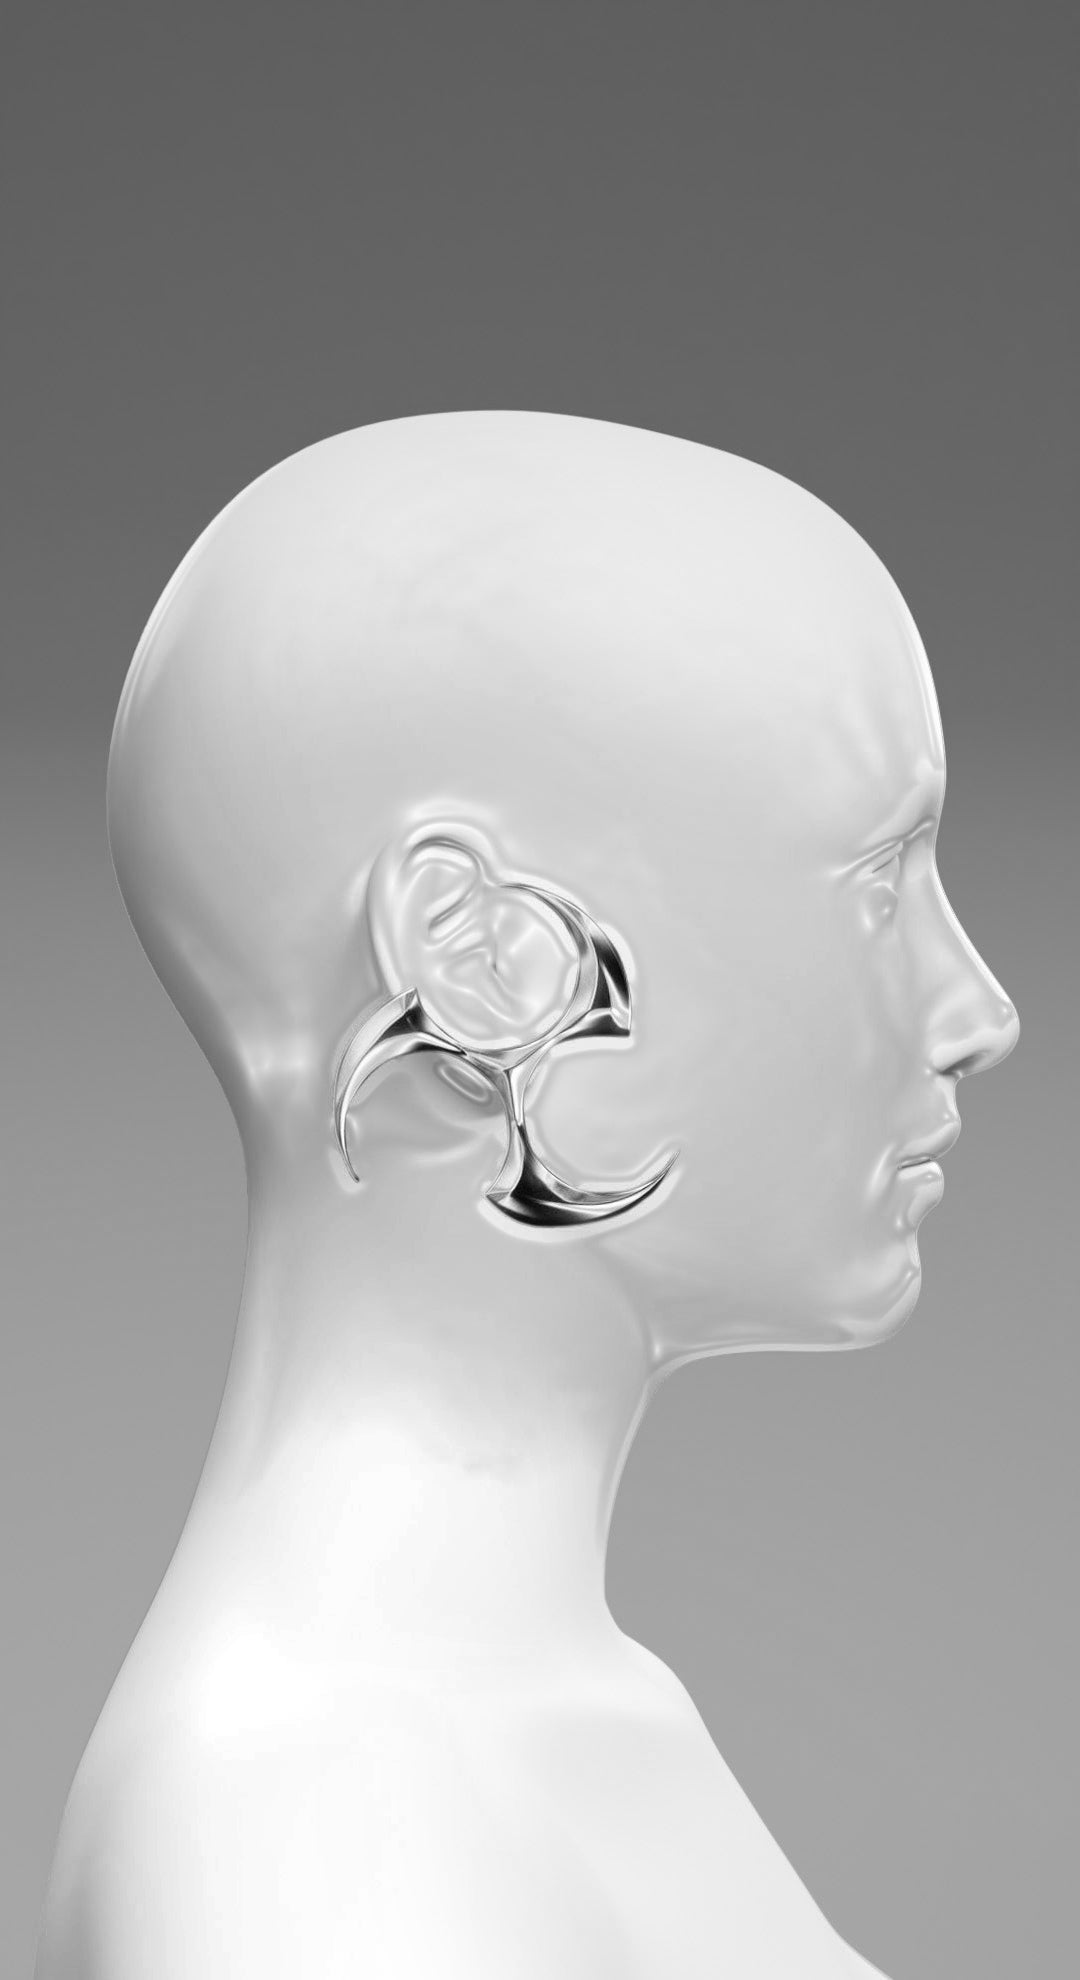 Shuriken Earrings